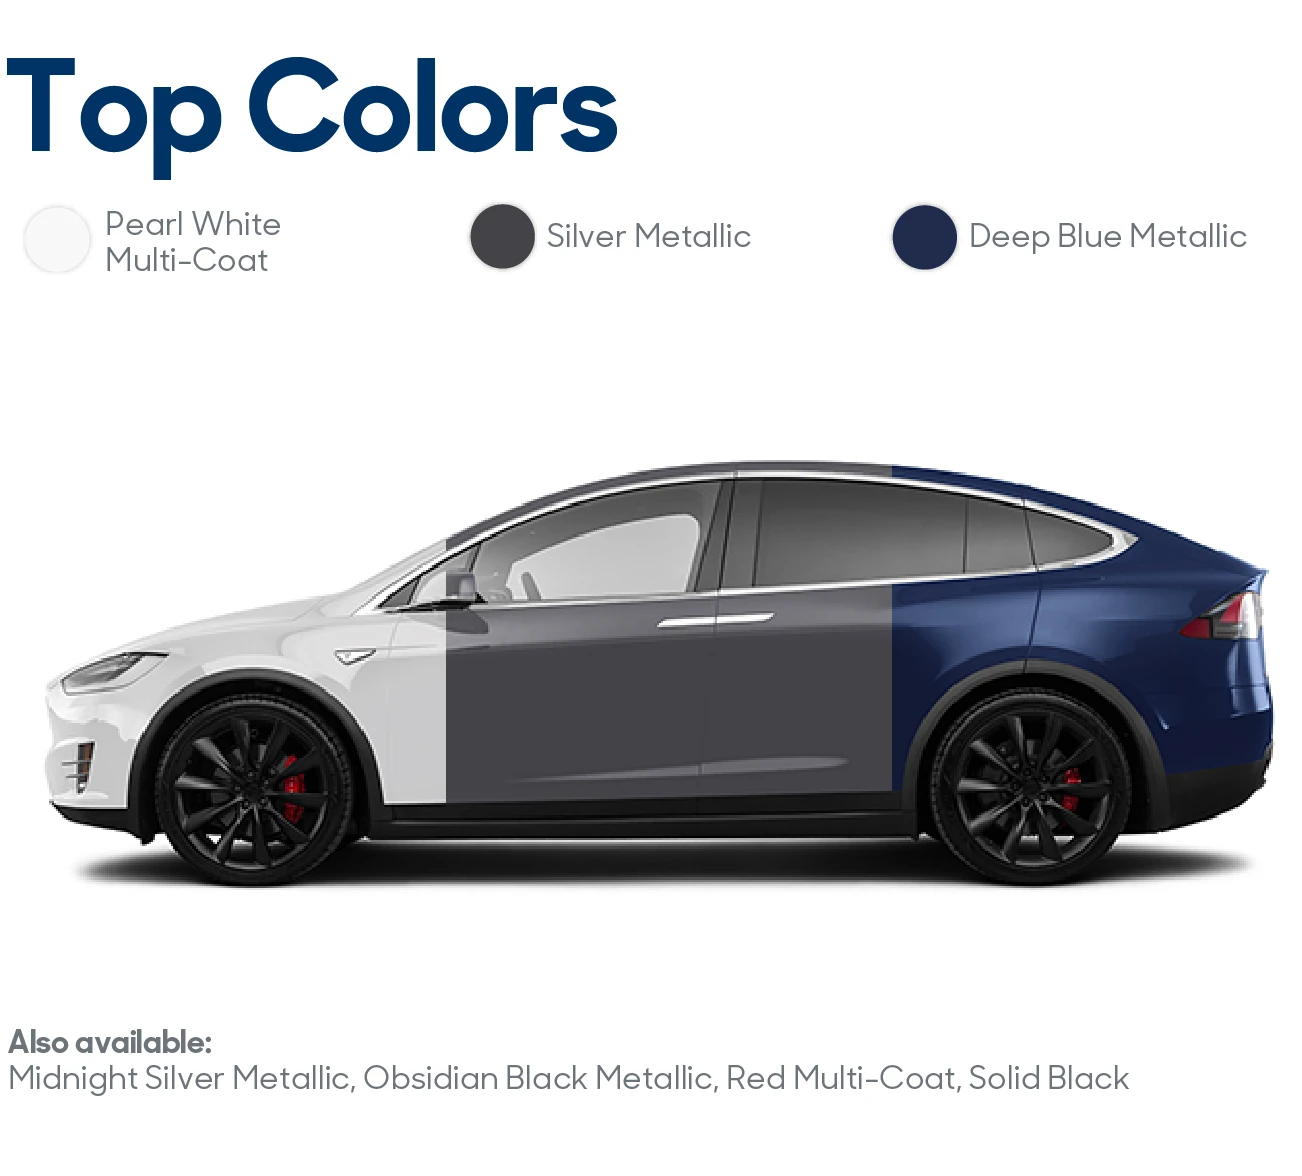 2017 Tesla Model X Review: Top Colors | CarMax